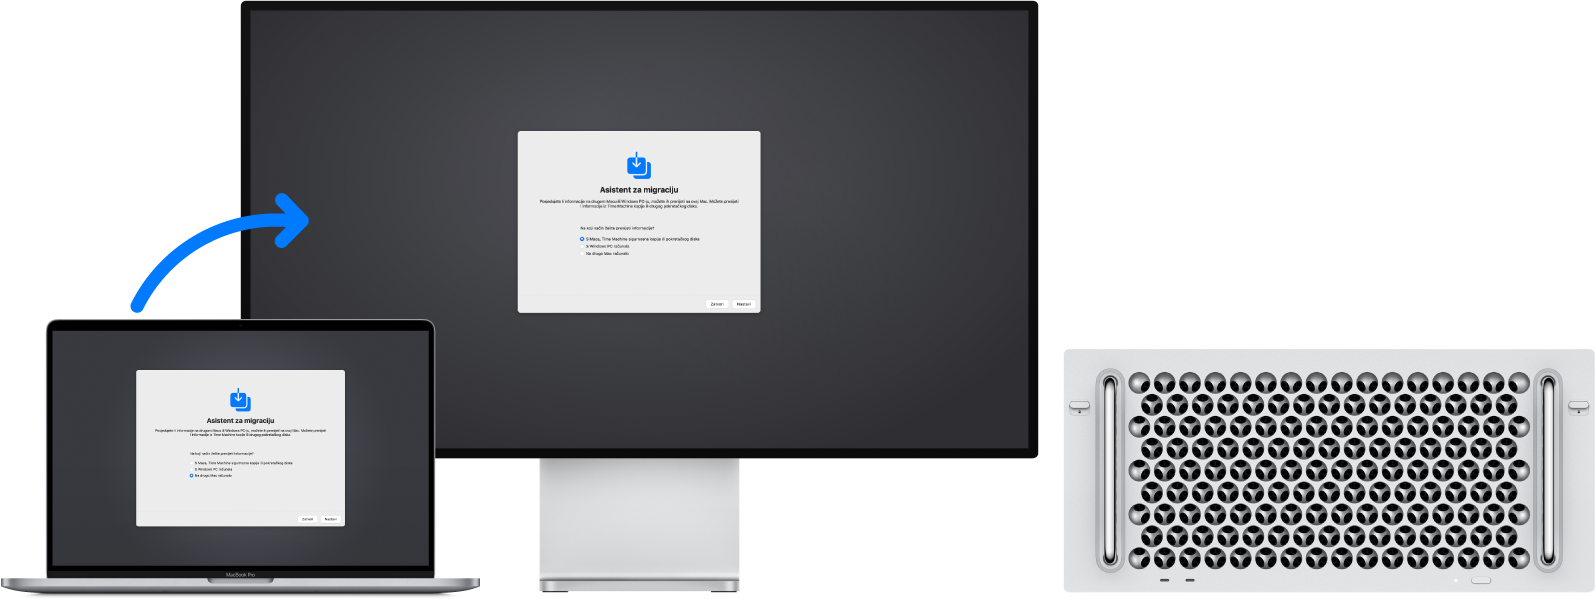 MacBook Pro i Mac Pro prikazuju zaslon Asistenta za migraciju. Strelica s računala MacBook Pro prema računalu Mac Pro implicira prijenos podataka s jednog na drugoga.